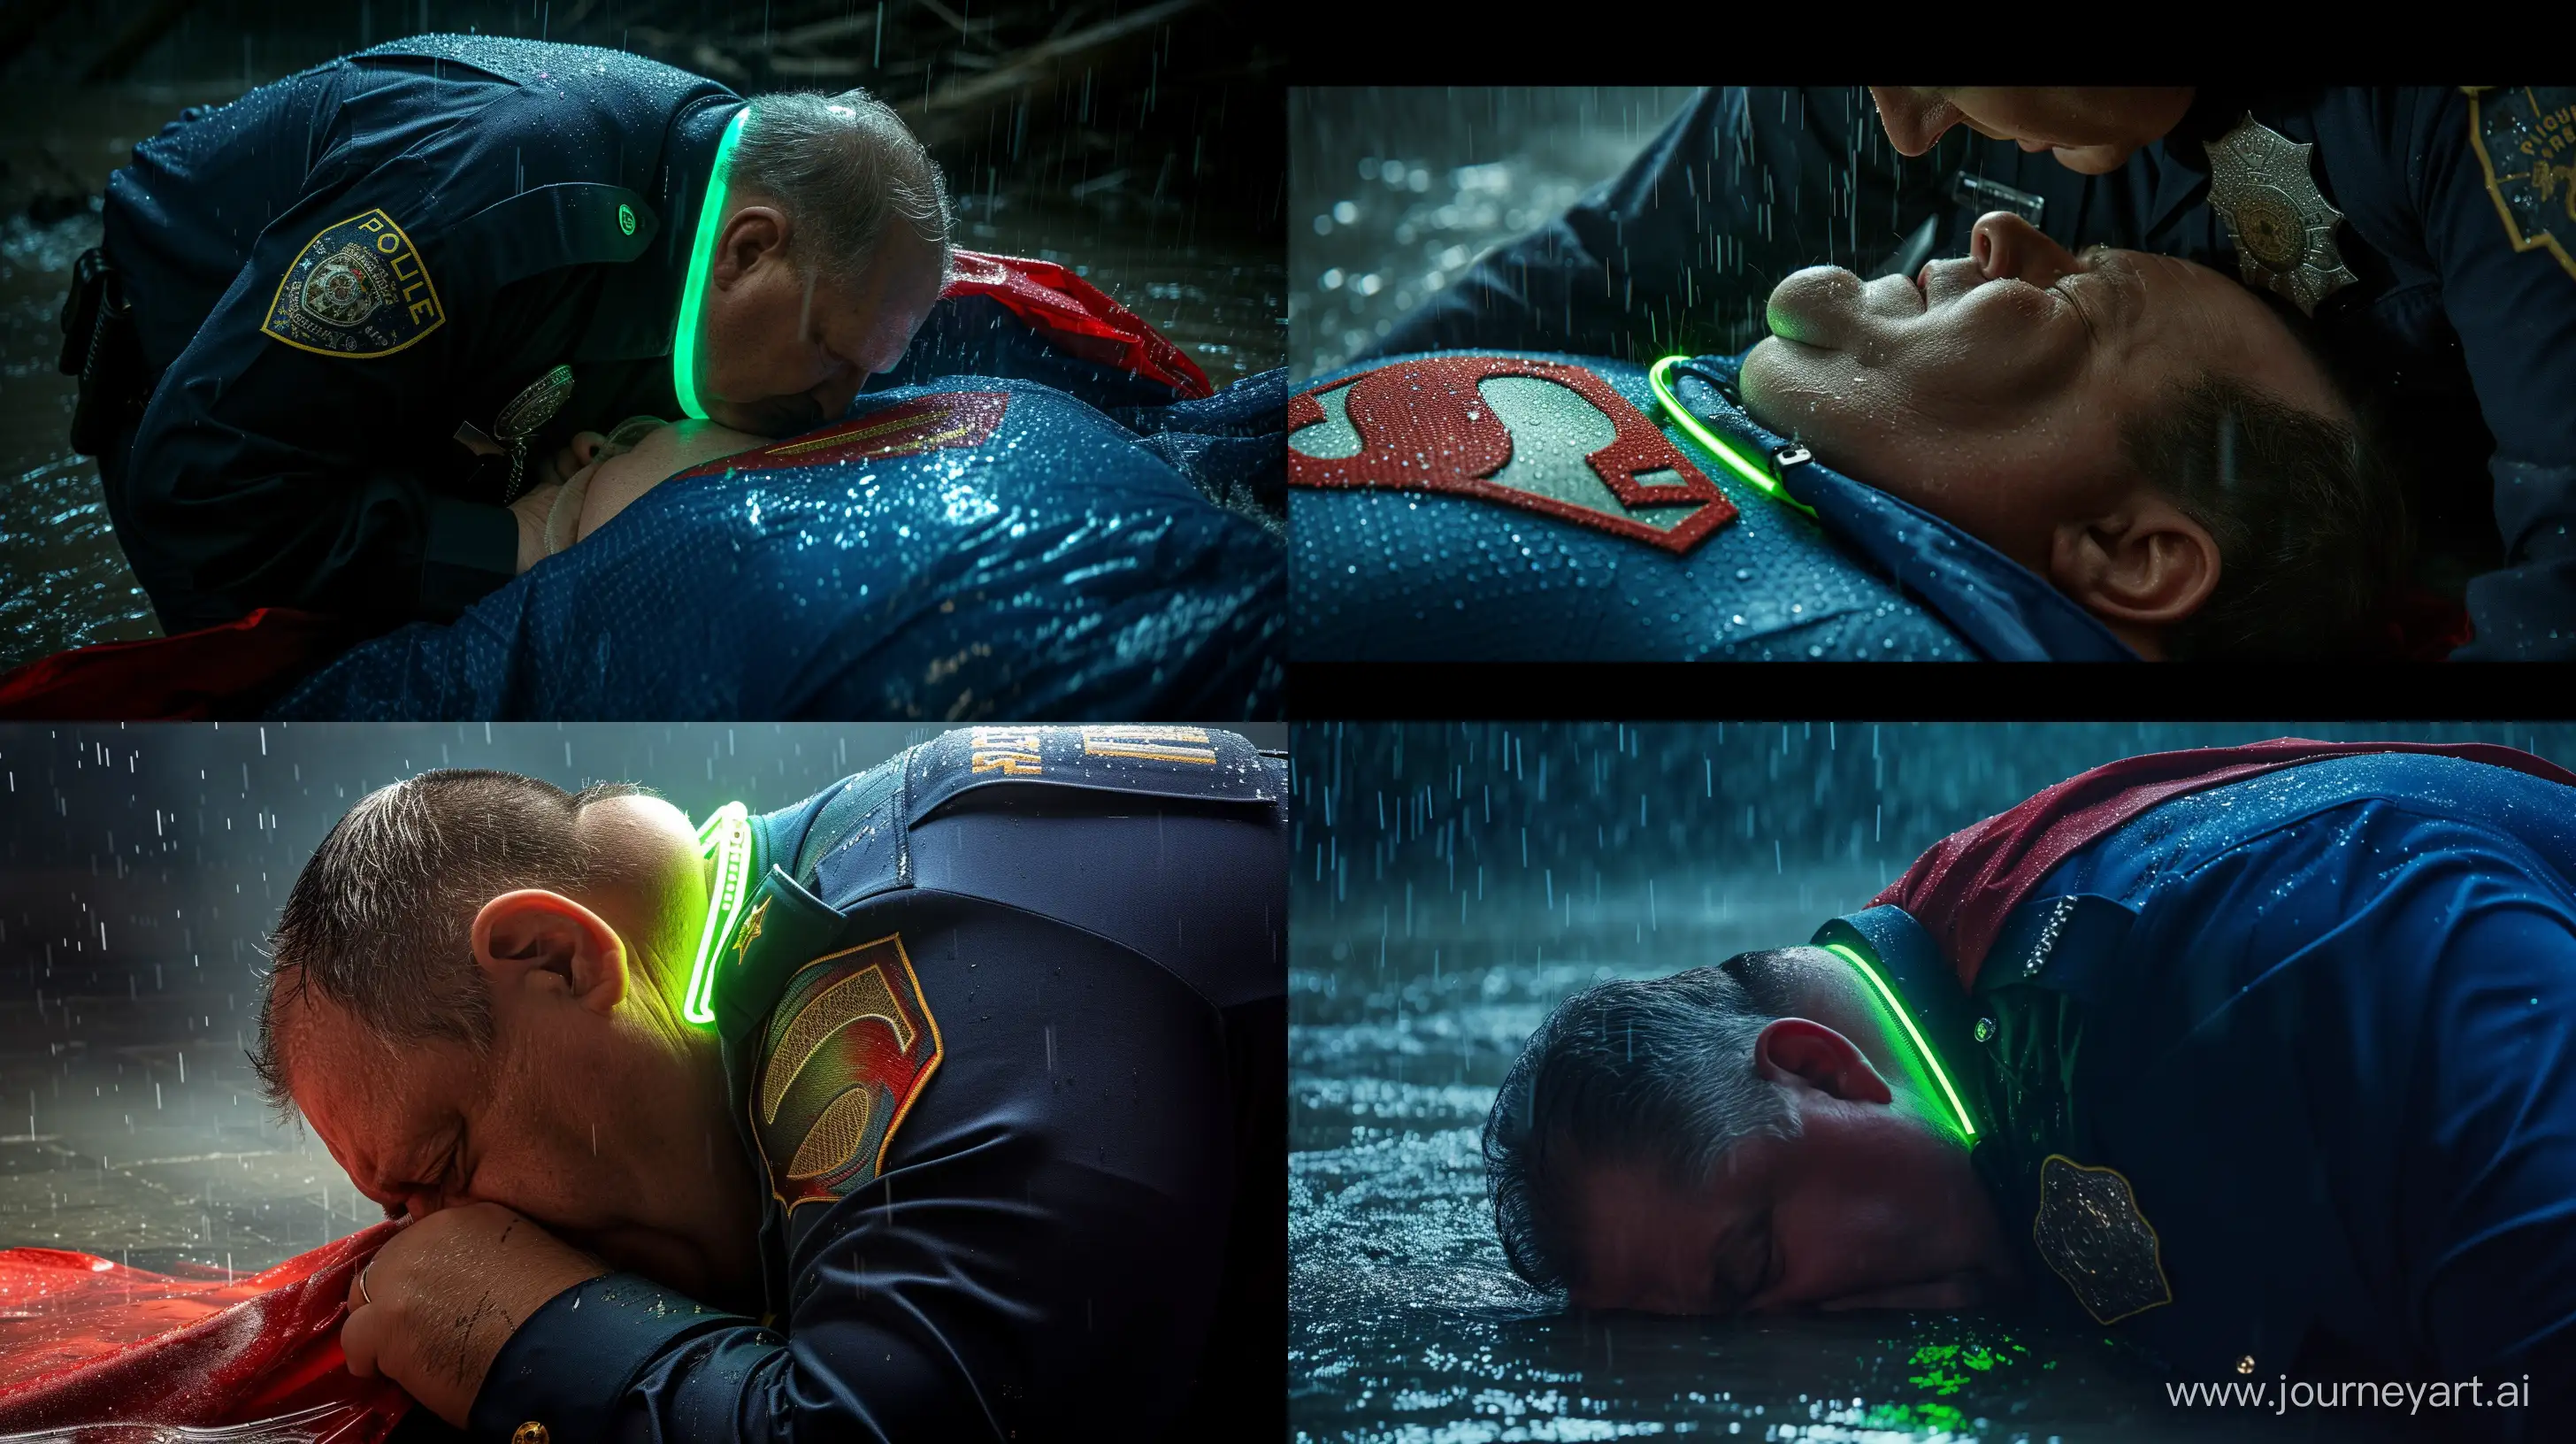 Elderly-Officer-Fastens-Neon-Dog-Collar-on-Superman-in-Rainy-River-Scene